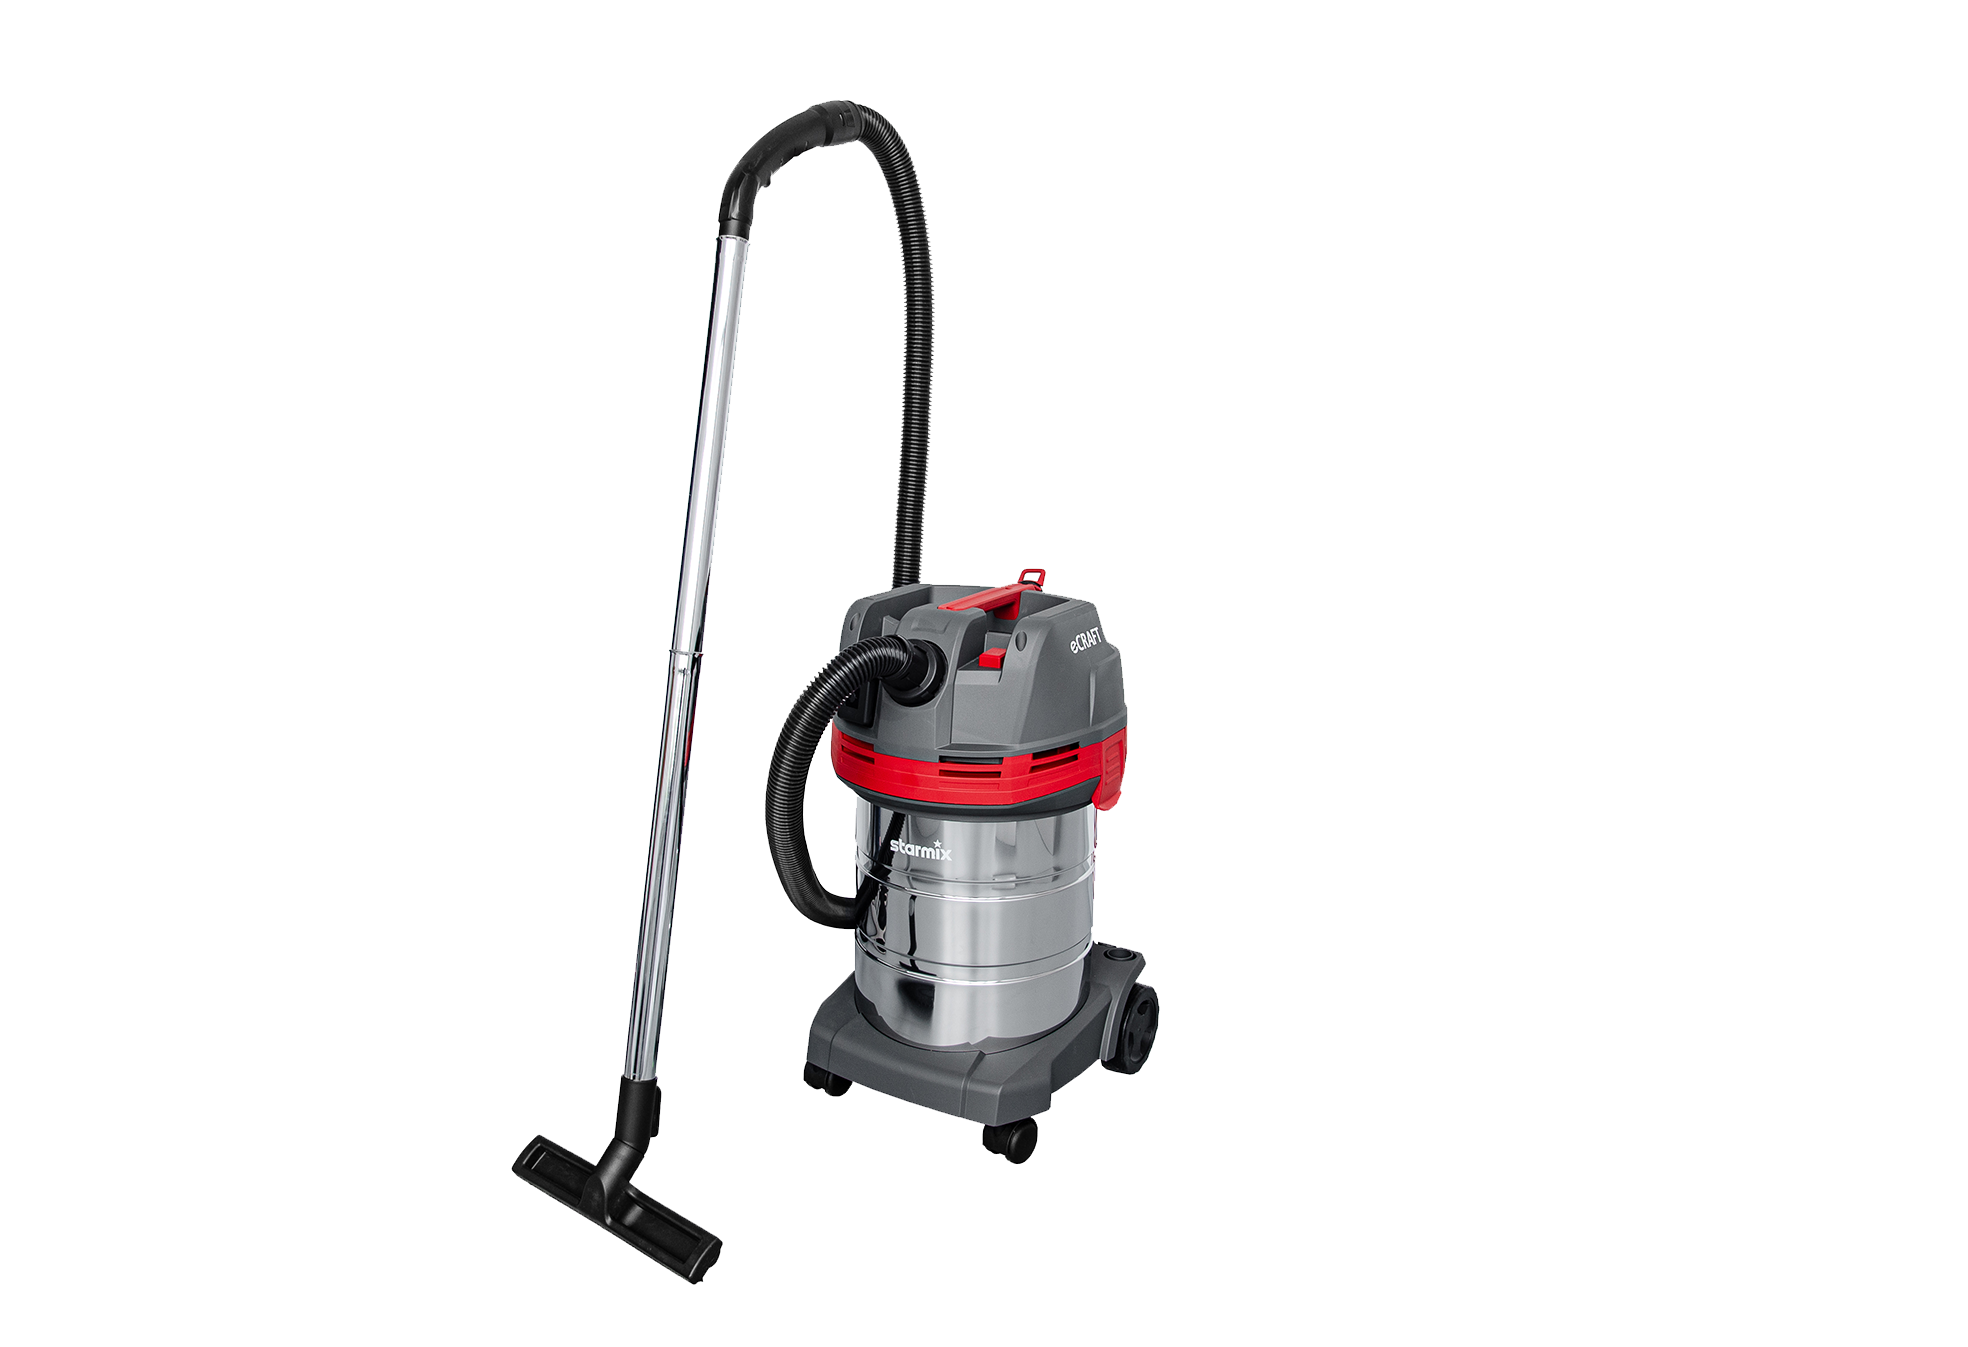 Universal vacuum cleaner - eCraft APL-1430 EWR